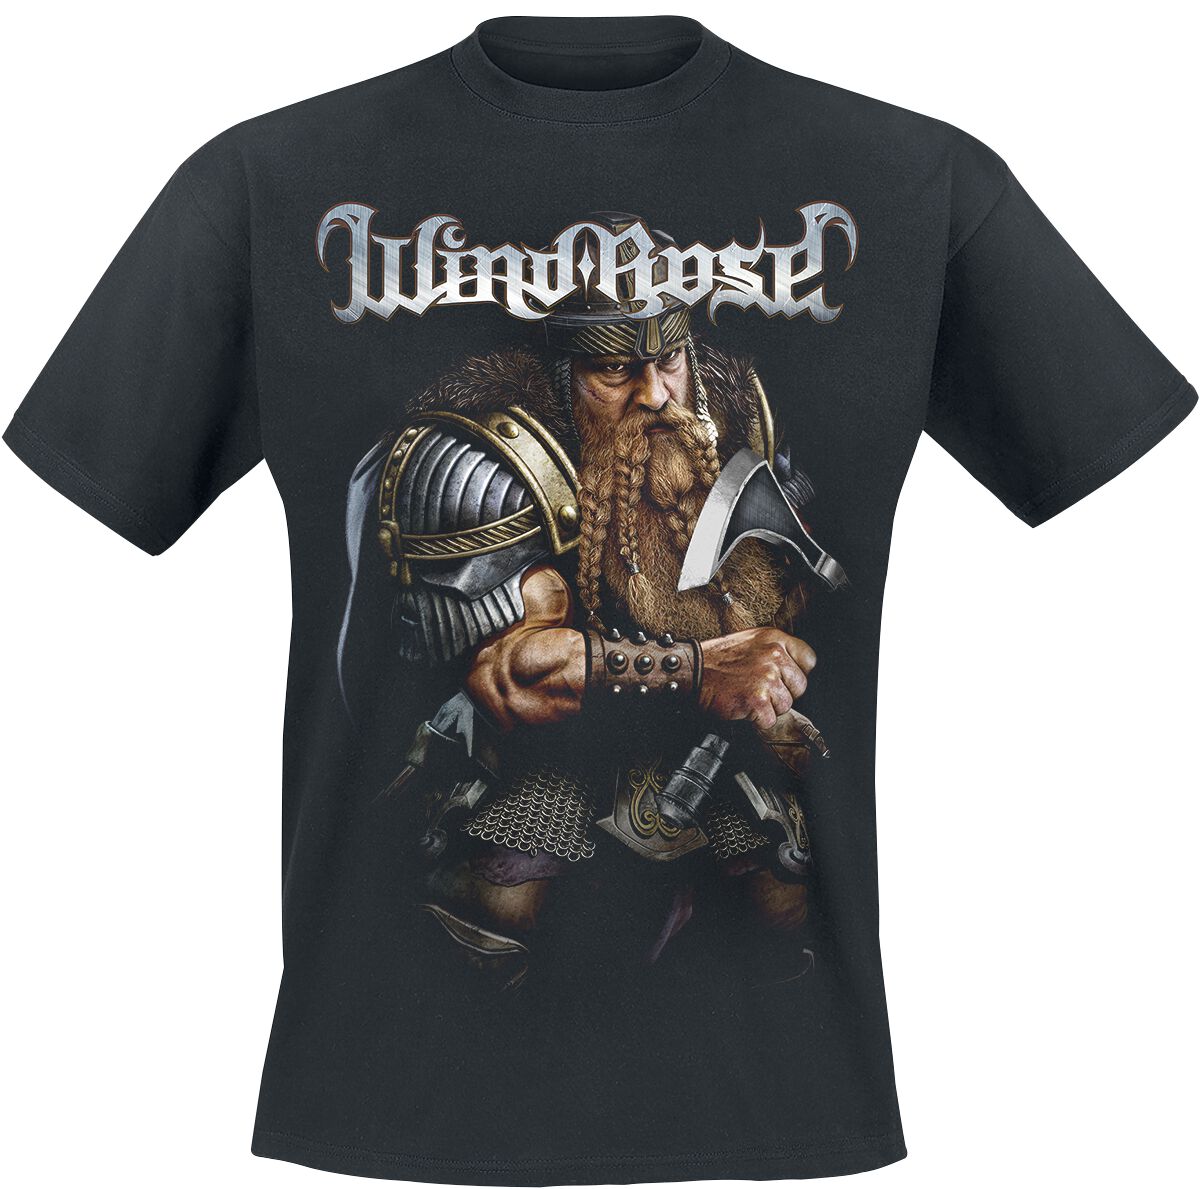 Wind Rose T-Shirt - Dwarf - S bis 4XL - für Männer - Größe S - schwarz  - Lizenziertes Merchandise!